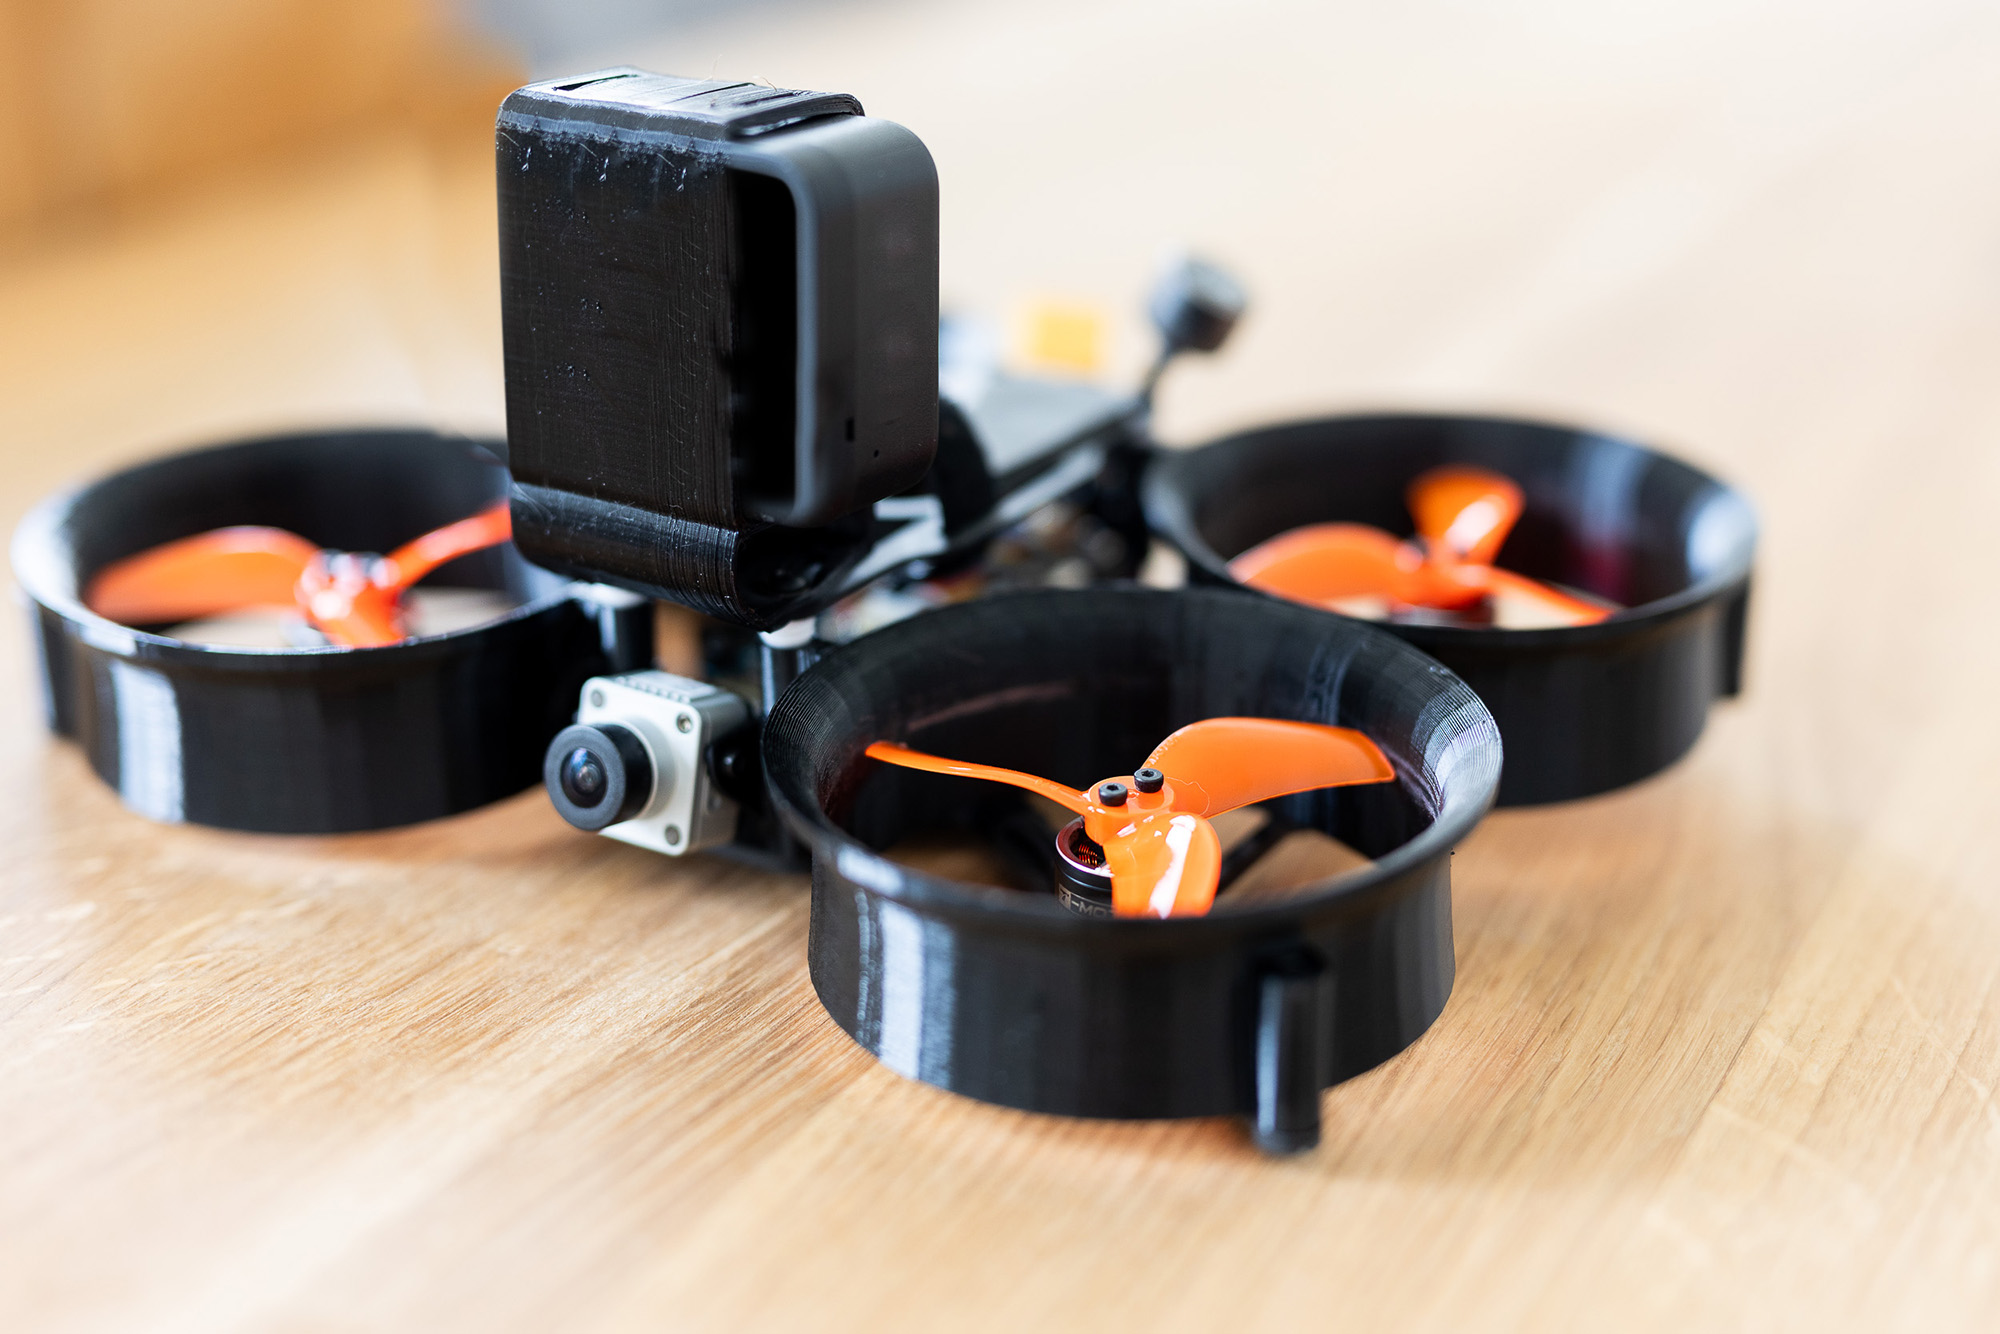 Indoor Drohne für Drohnenflüge in Hotels und Drohnen Indoor Touren